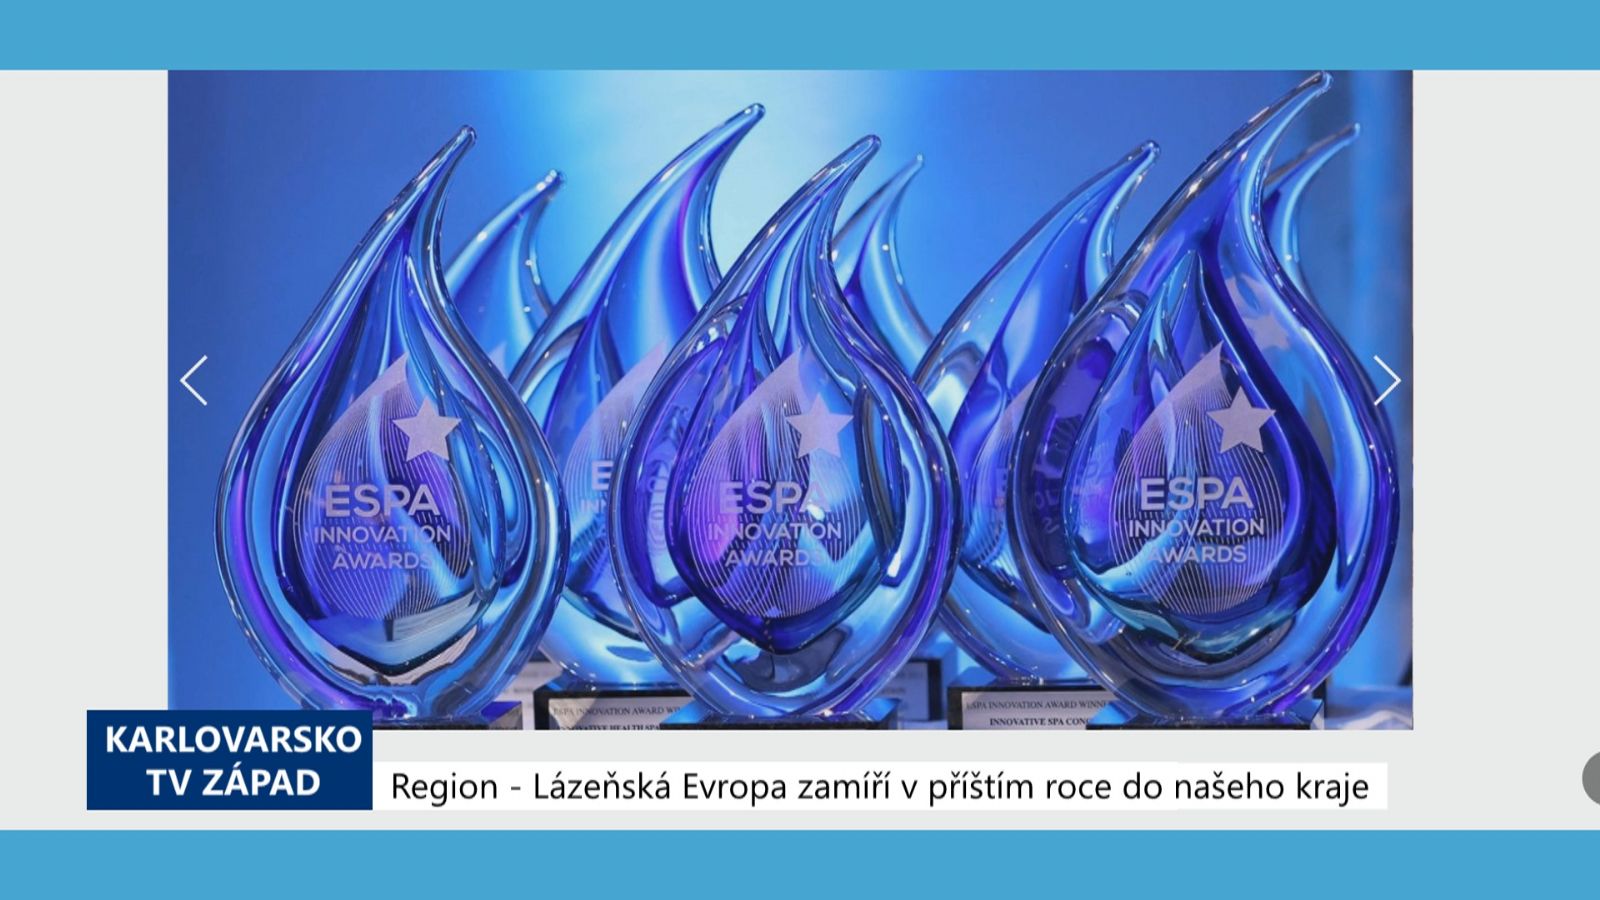 Region: Lázeňská Evropa zamíří v příštím roce do našeho kraje (TV Západ)